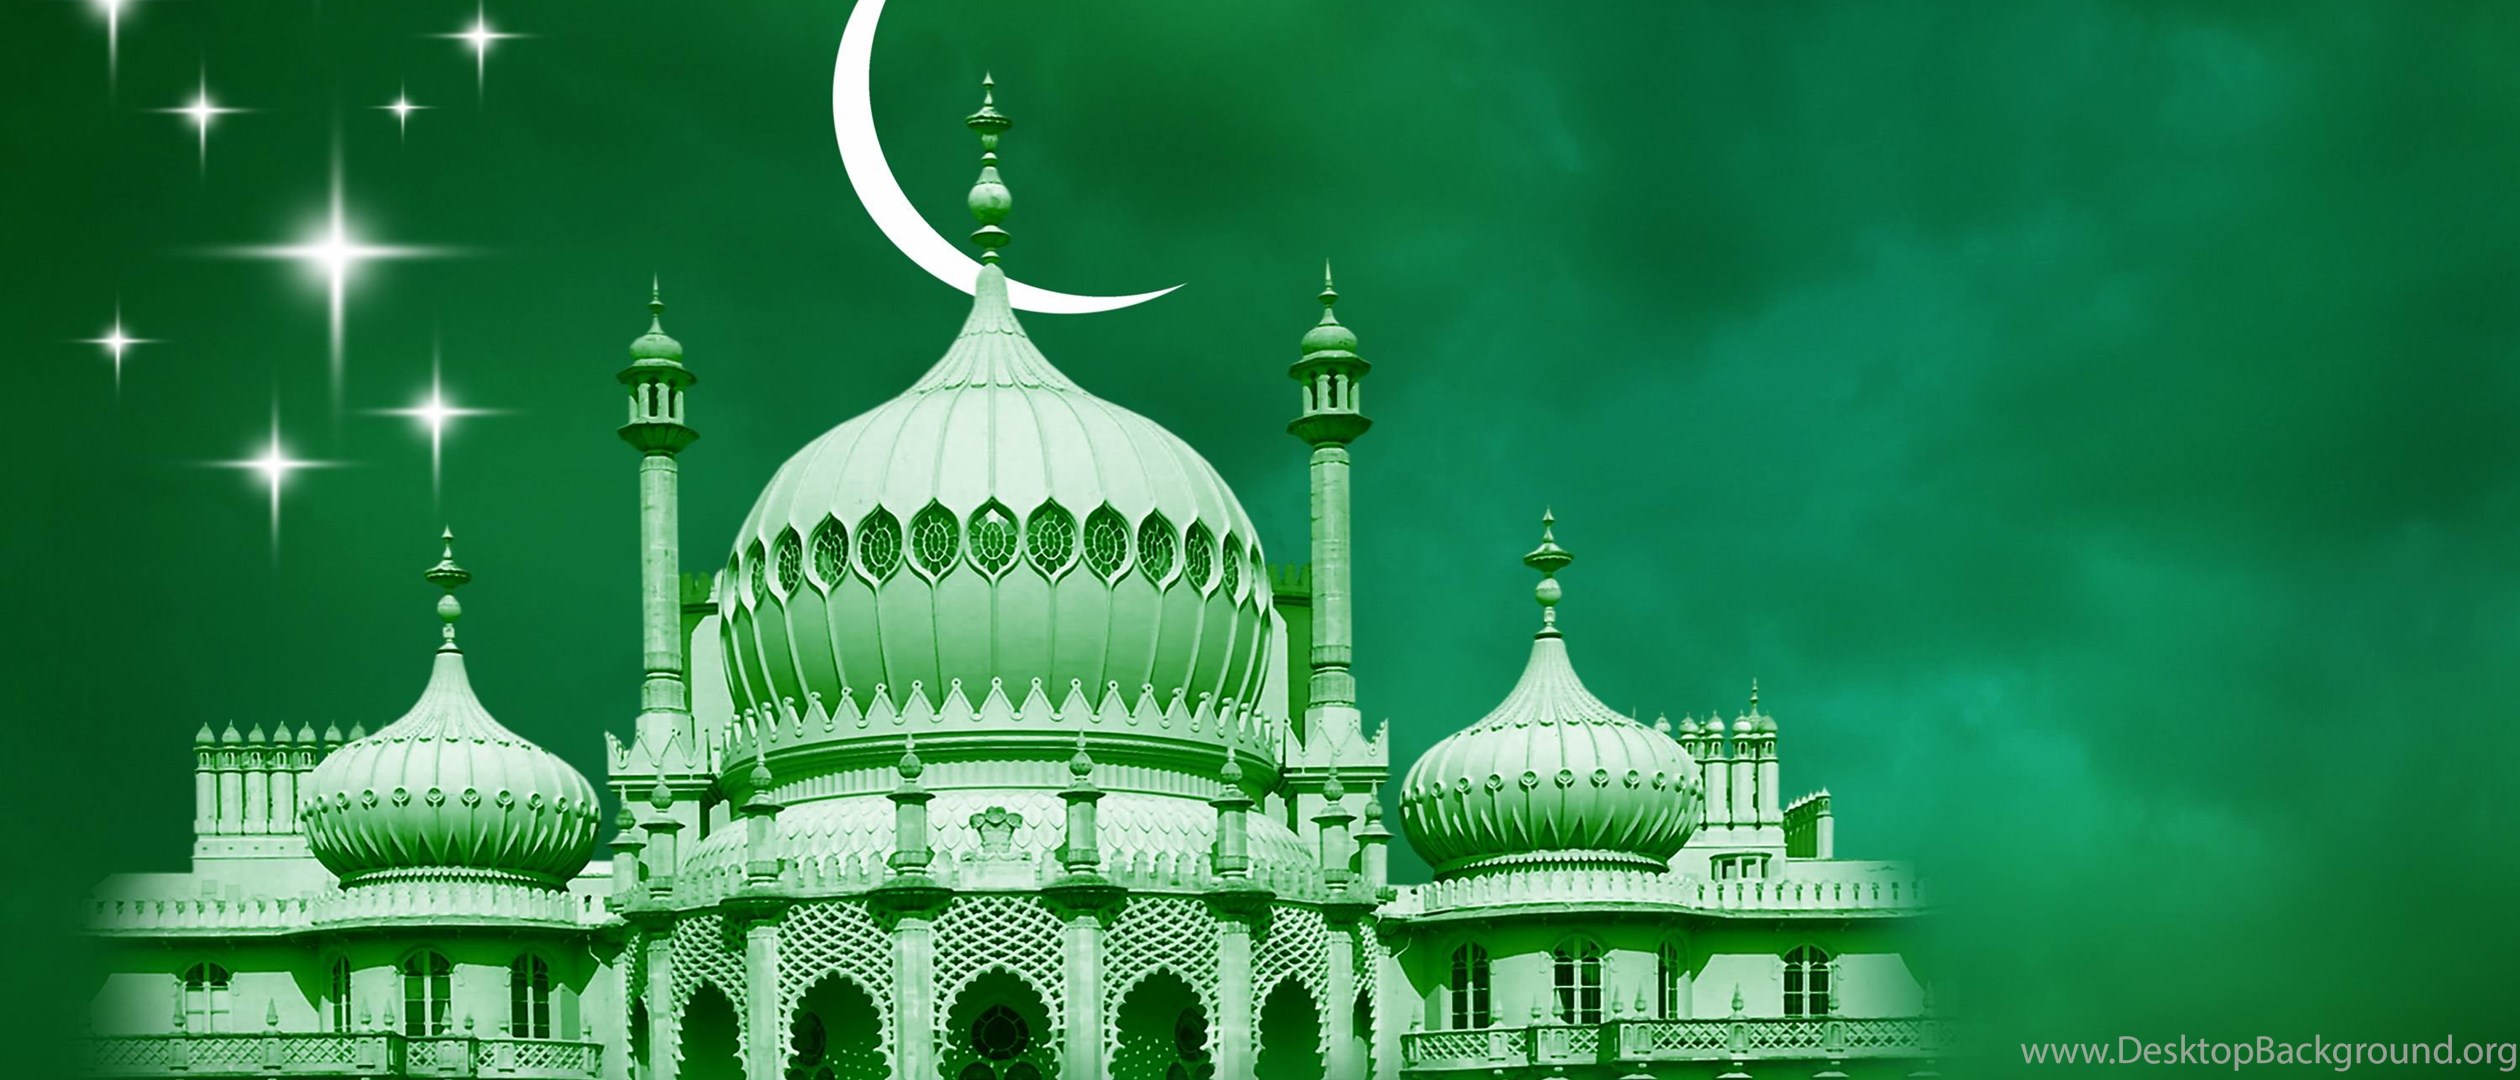 Ураза мубарак булсын. Мусульманский праздник Курбан байрам. Ураза и Курбан байрам. Мечеть на зеленом фоне. С праздником Курбан байрам.